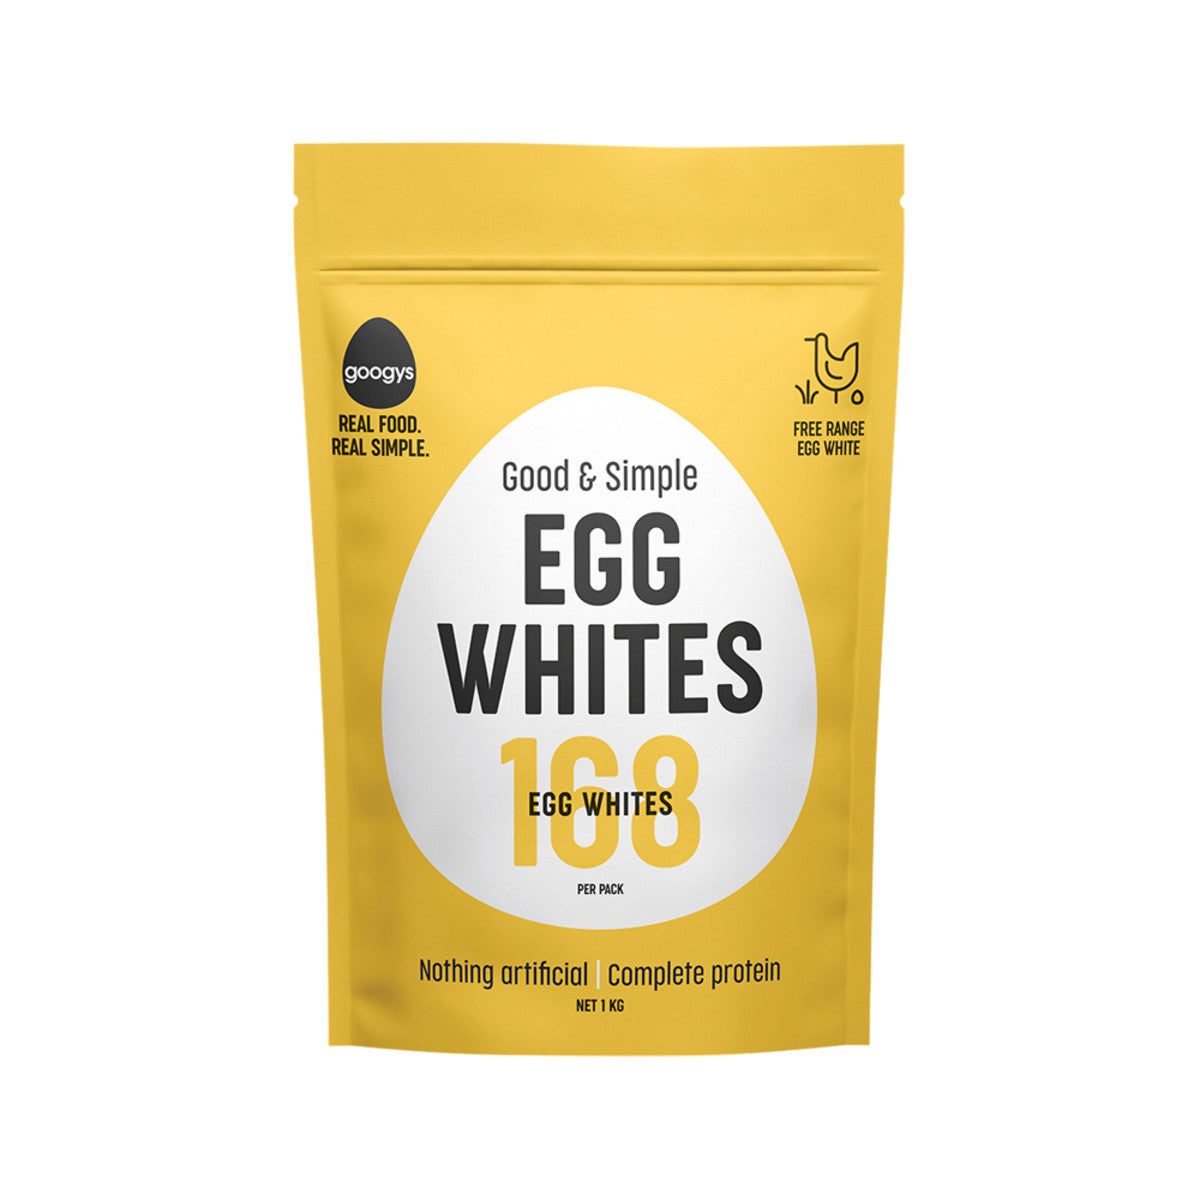 googys good & simple egg whites 1kg